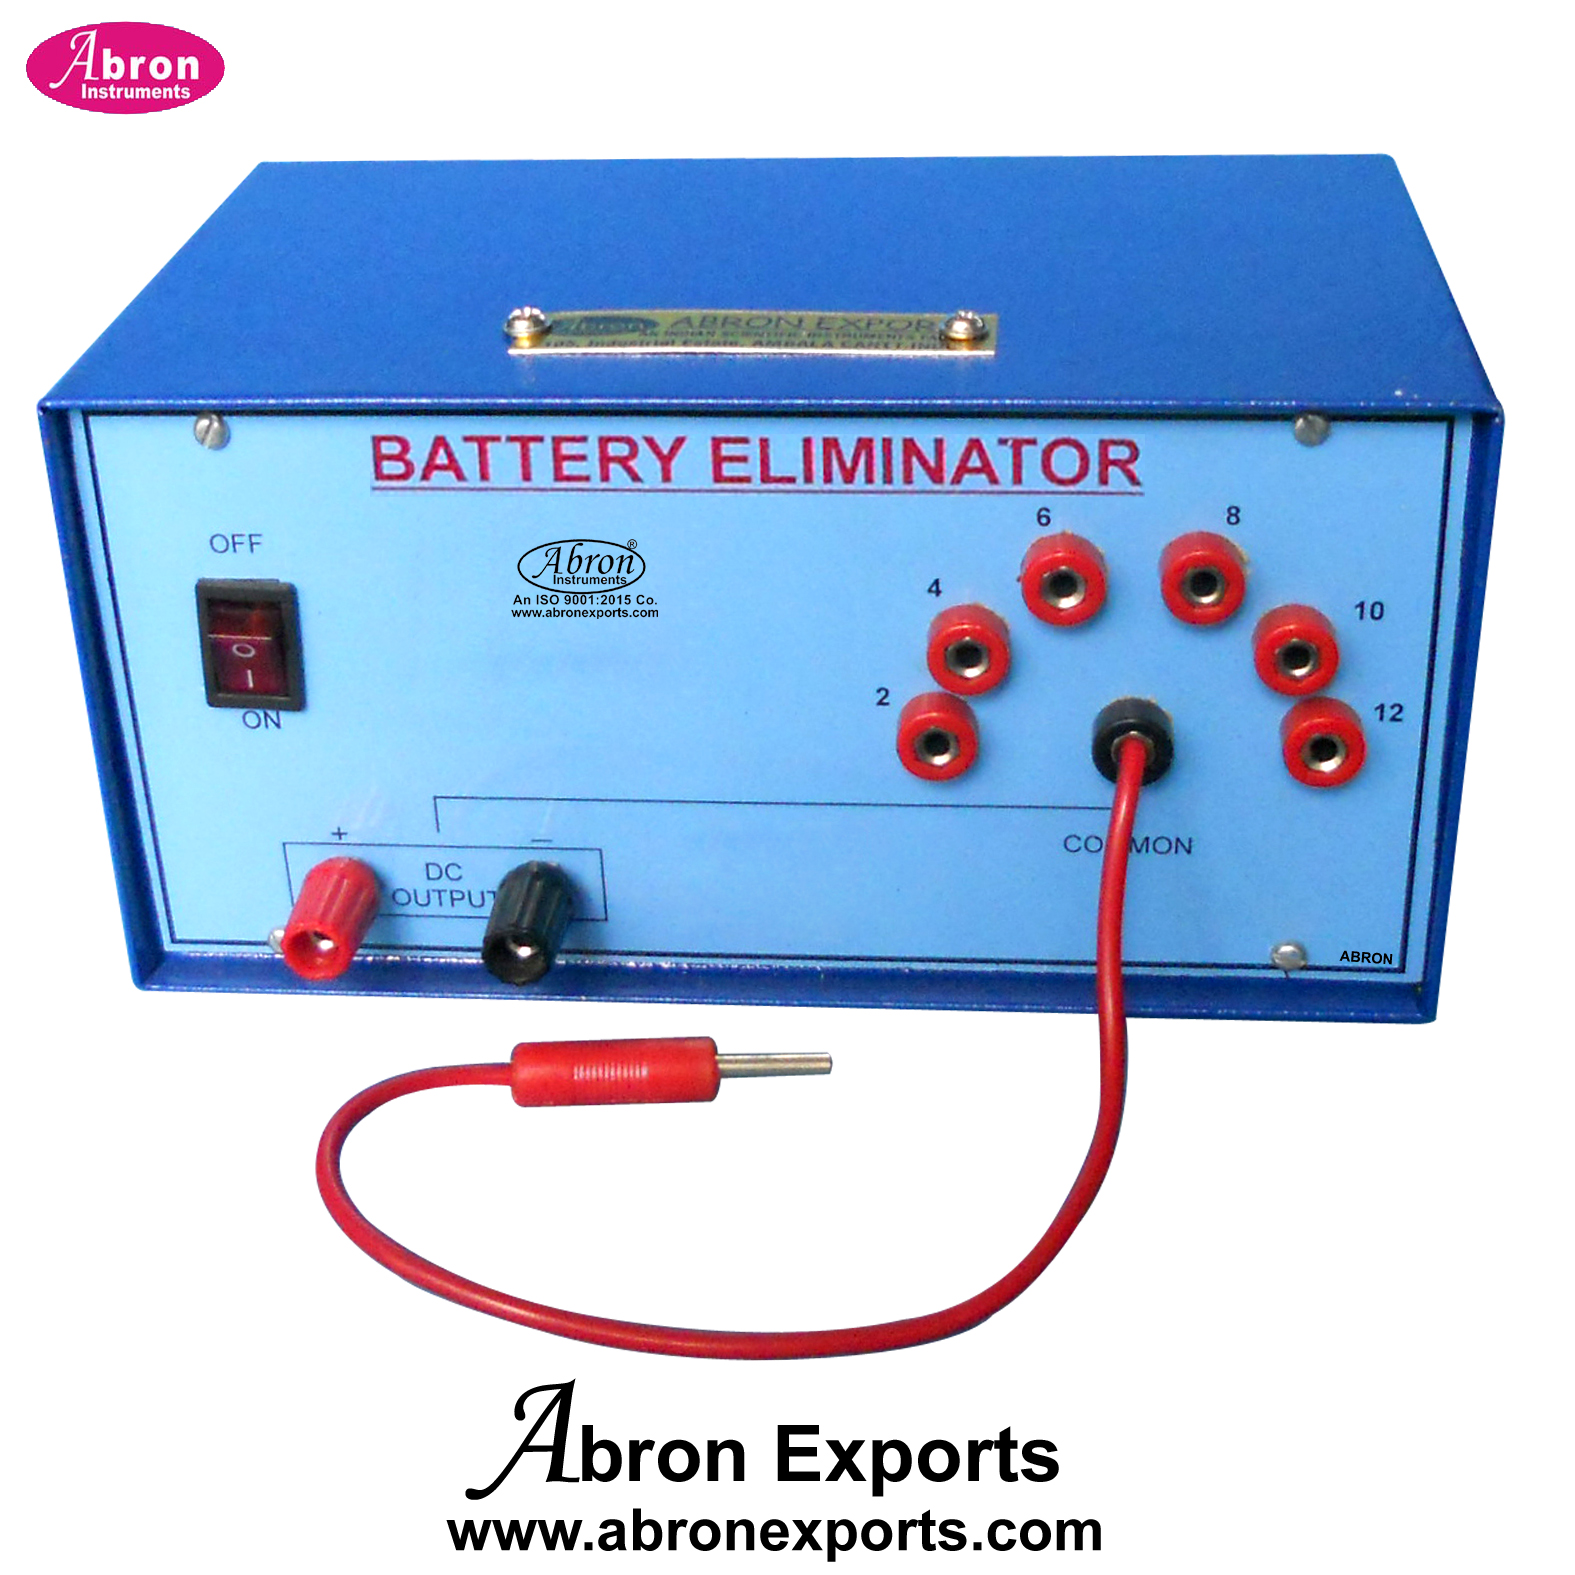 Battery Eliminator Output 2v,4v,6v,8V,10V,12V 5Amp AE-1205-S5 